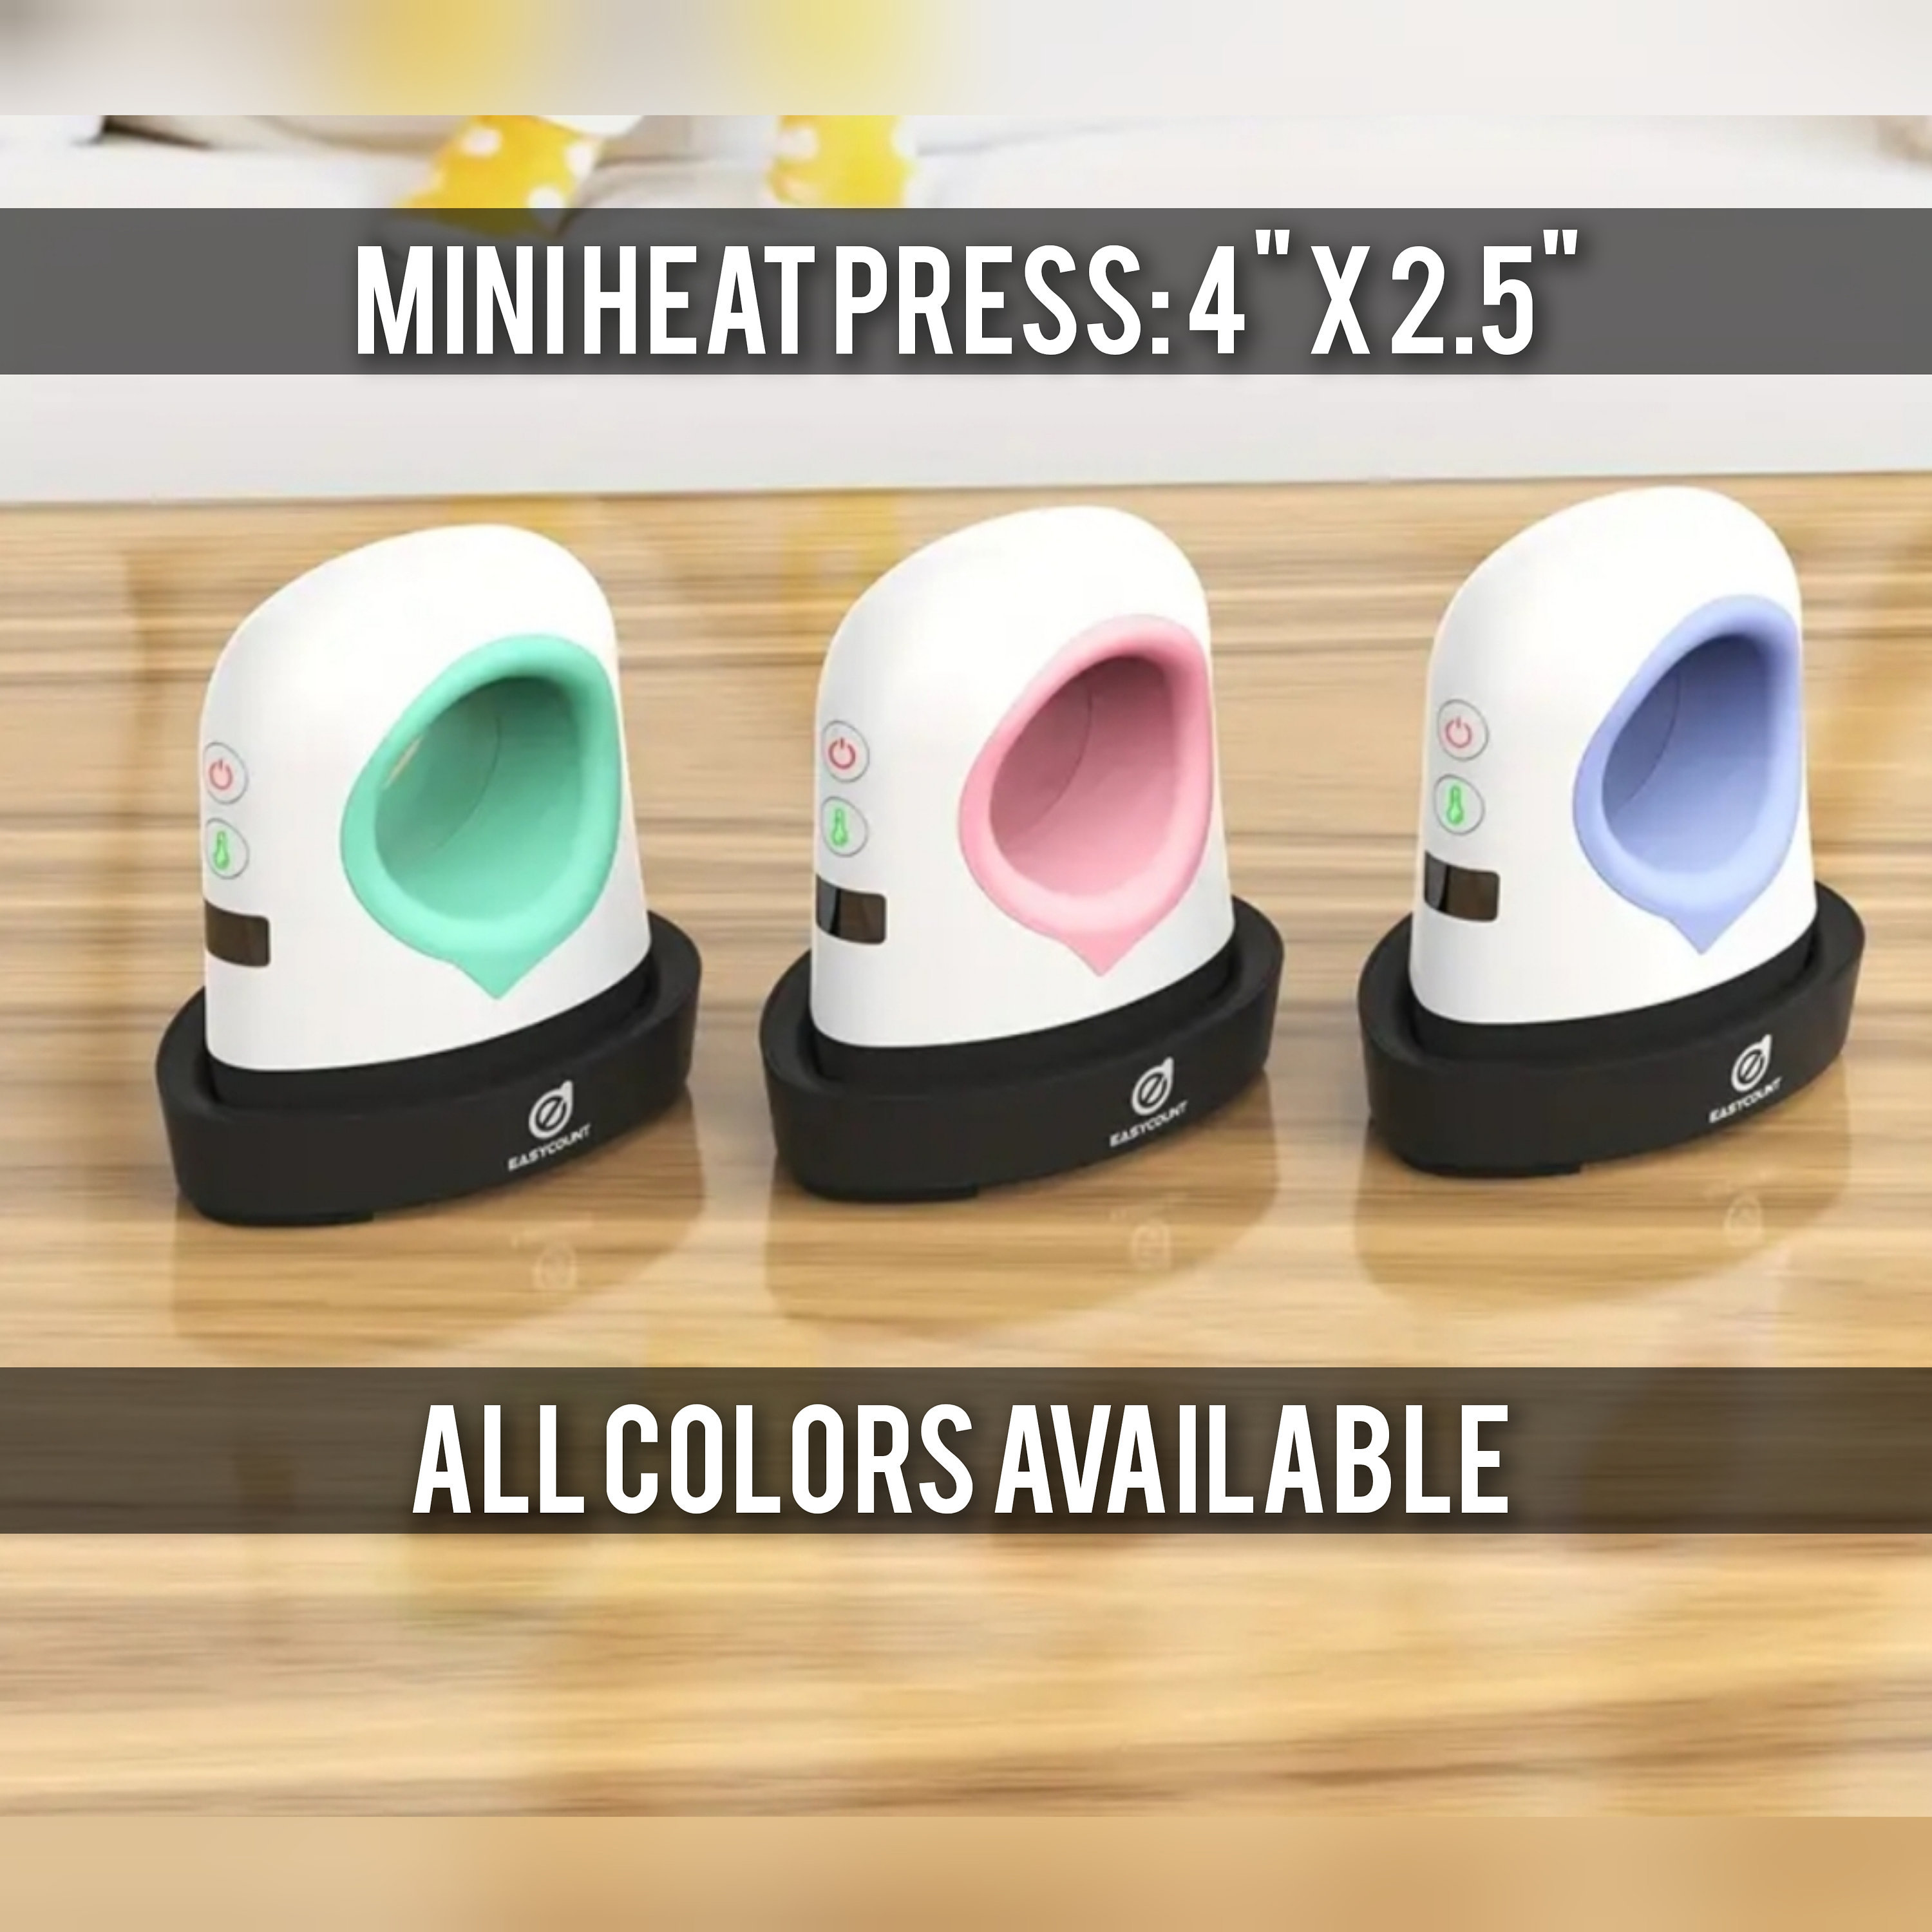 Mini Heat Press: 4 X 2.5 Iron Press With 5 Heat Settings & LCD Display. 